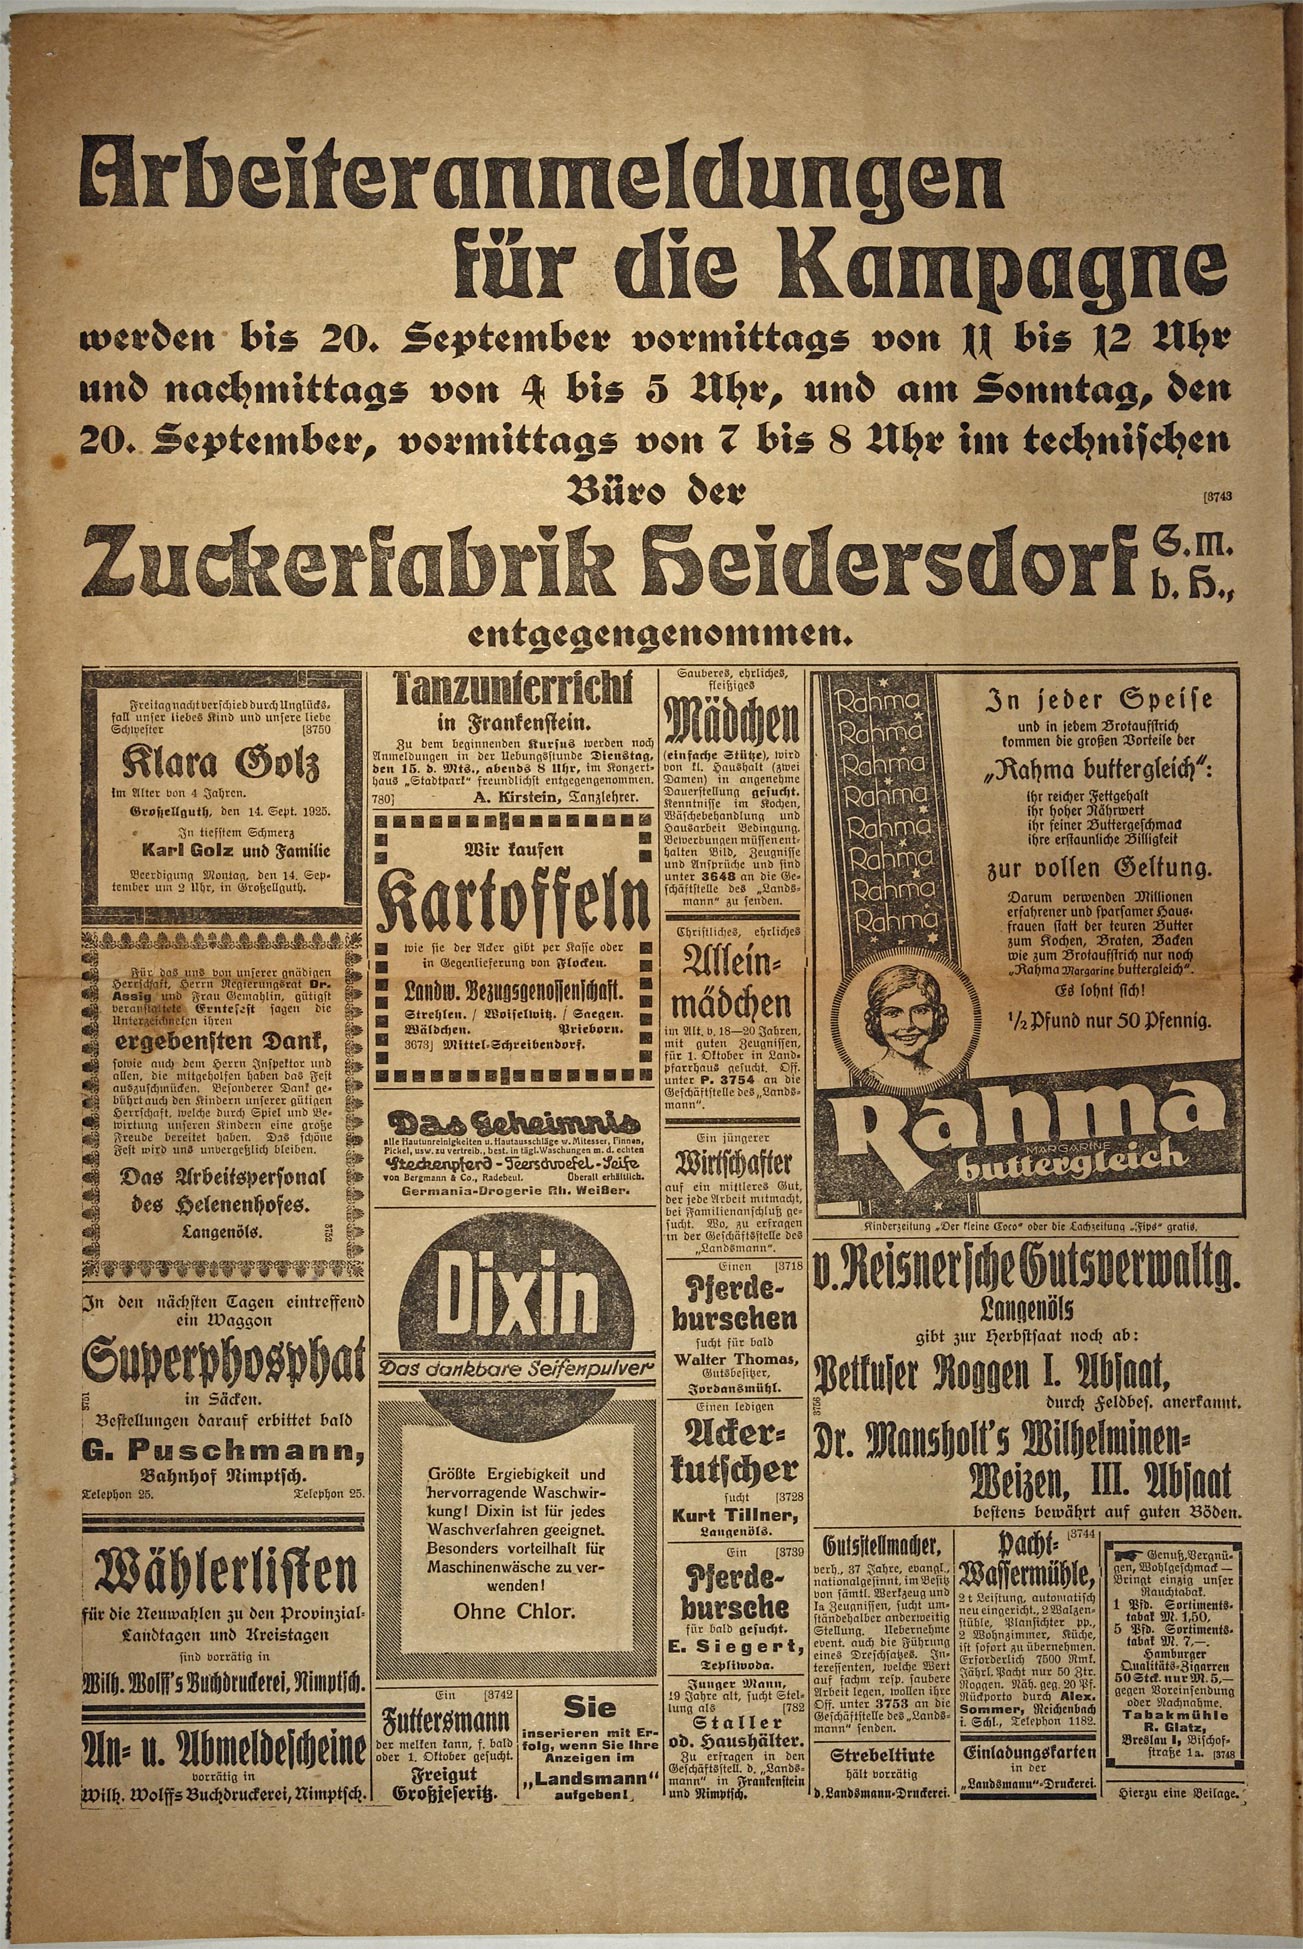 Der Landsmann 15.09.1925 Seite 4